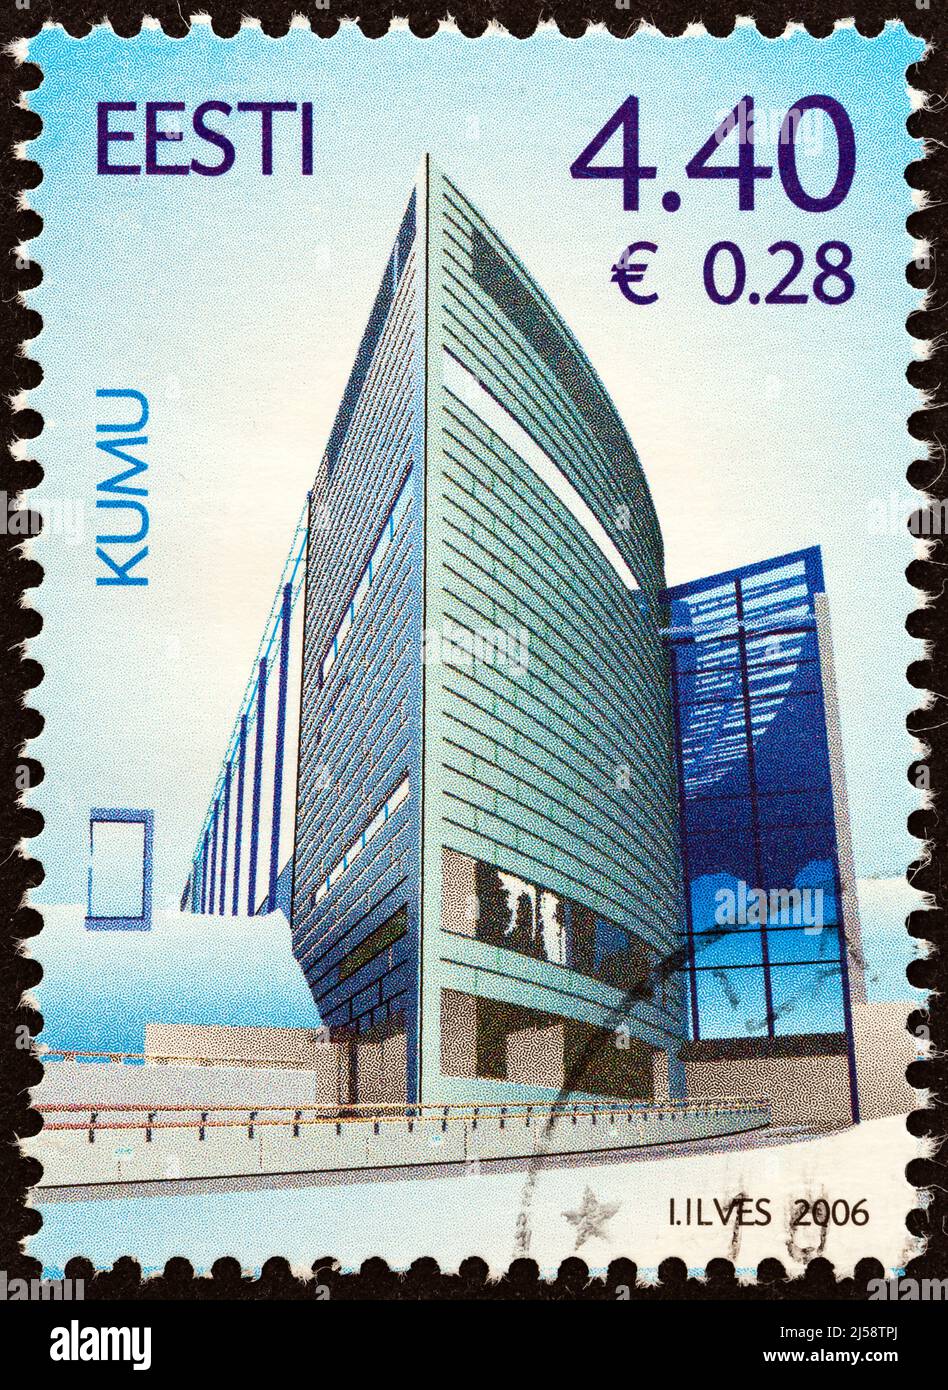 ESTONIE - VERS 2006: Un timbre imprimé en Estonie montre Kumu, Musée d'art estonien, vers 2006. Banque D'Images